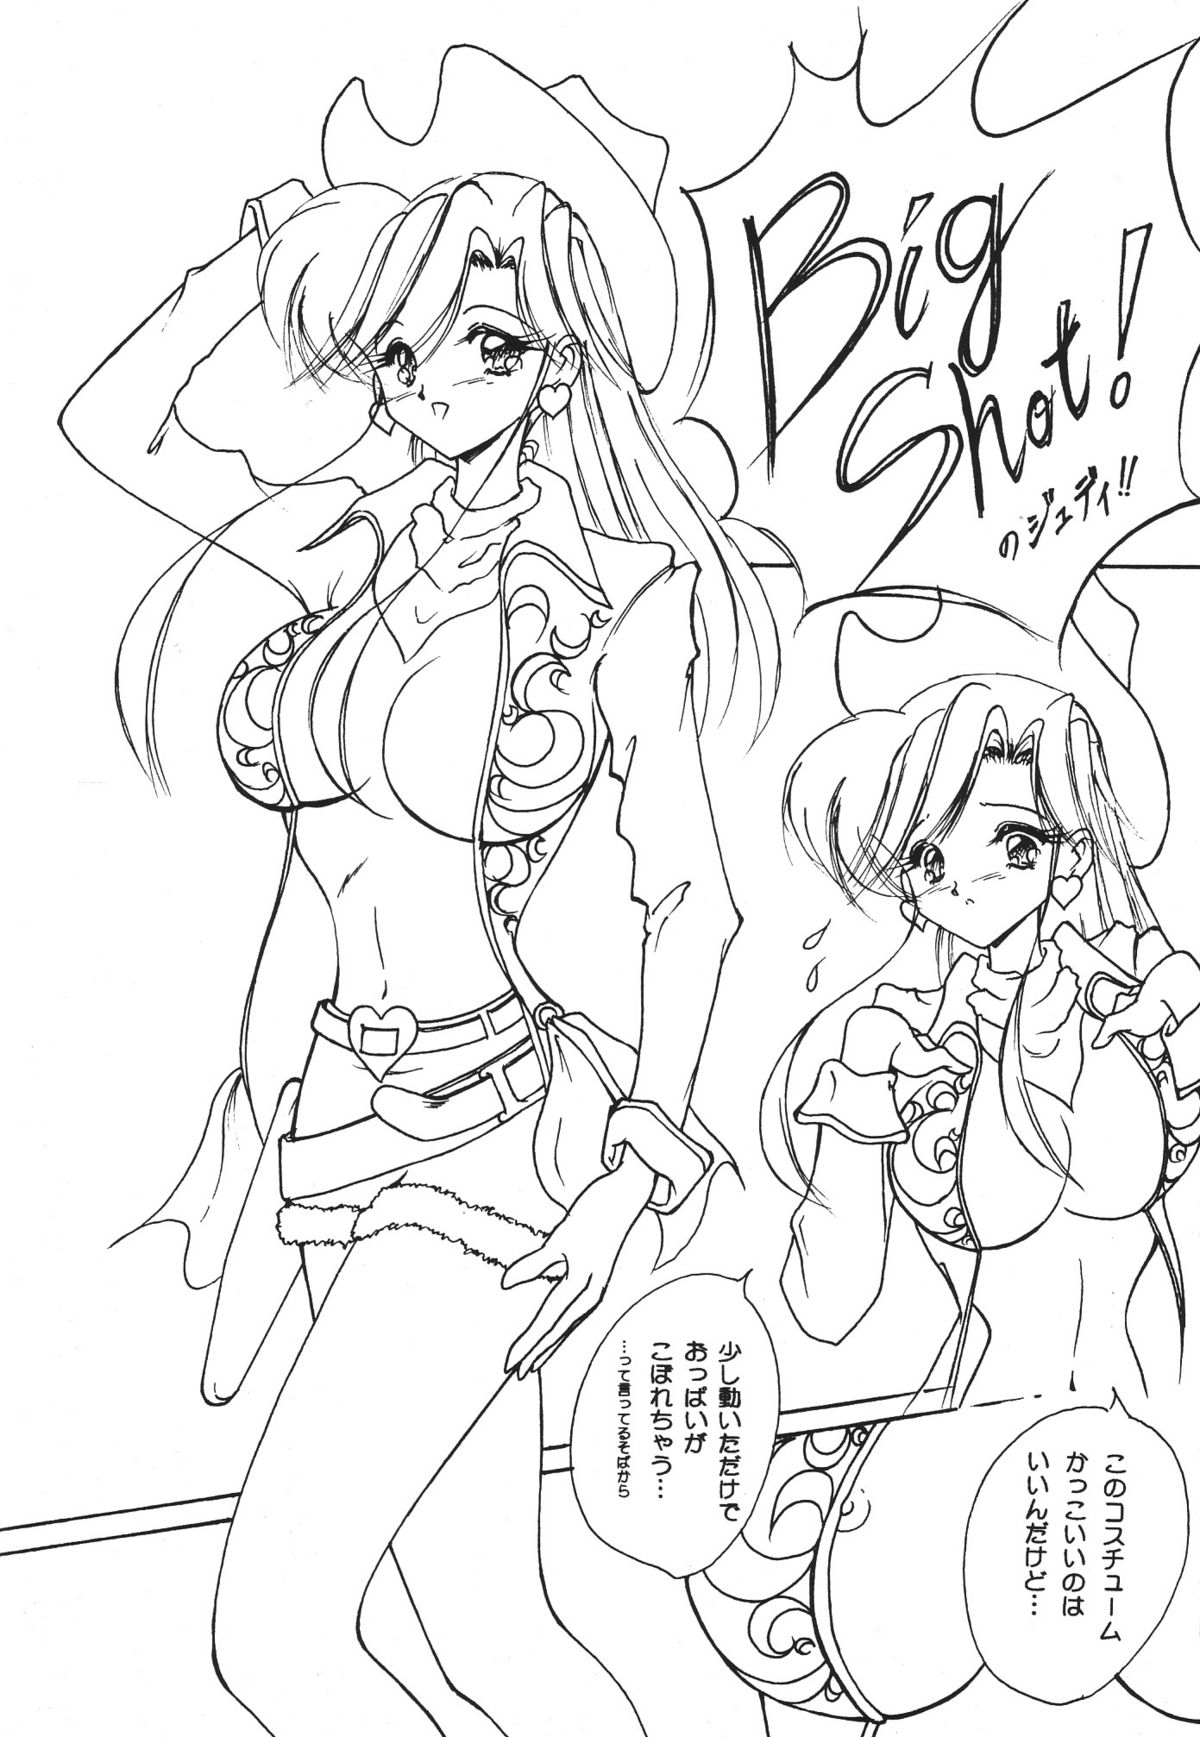 [Seishun No Nigirikobushi!] Favorite Visions 2 (Sailor Moon, AIKa) page 24 full